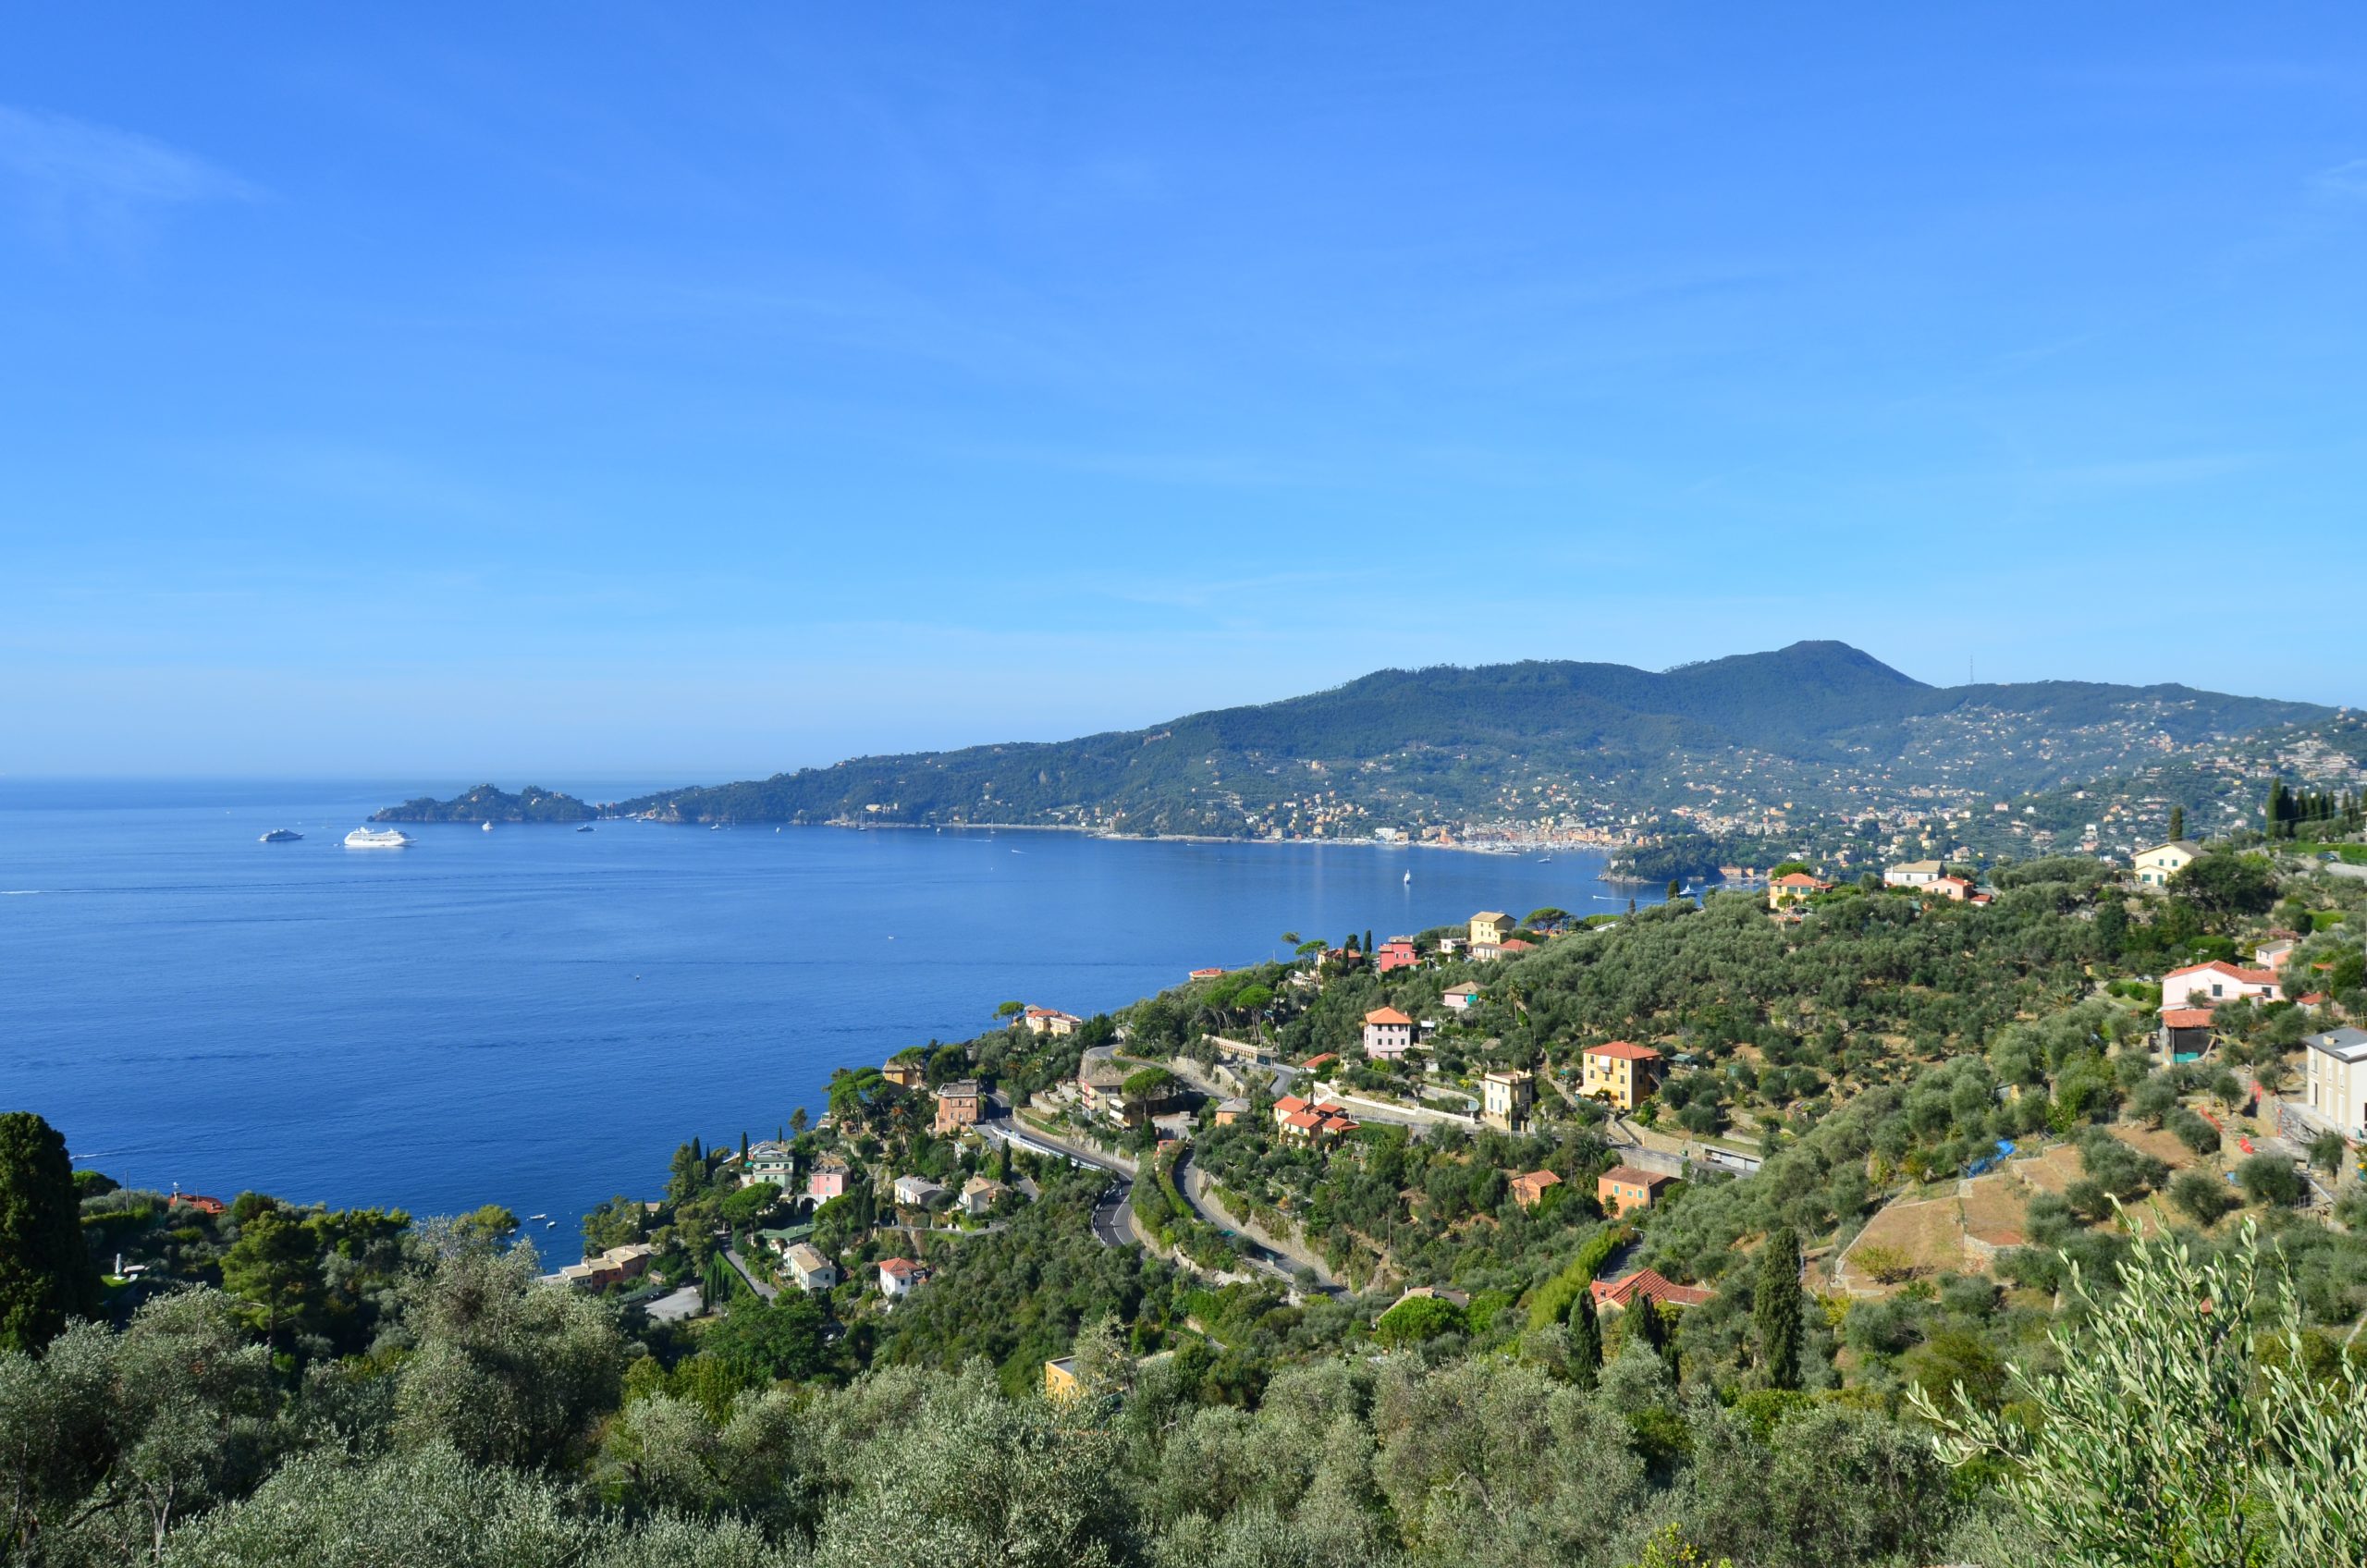 Anche Legambiente Liguria interviene duramente sulla perimetrazione del Parco di Portofino decisa dalla Regione Liguria, criticandone modalità